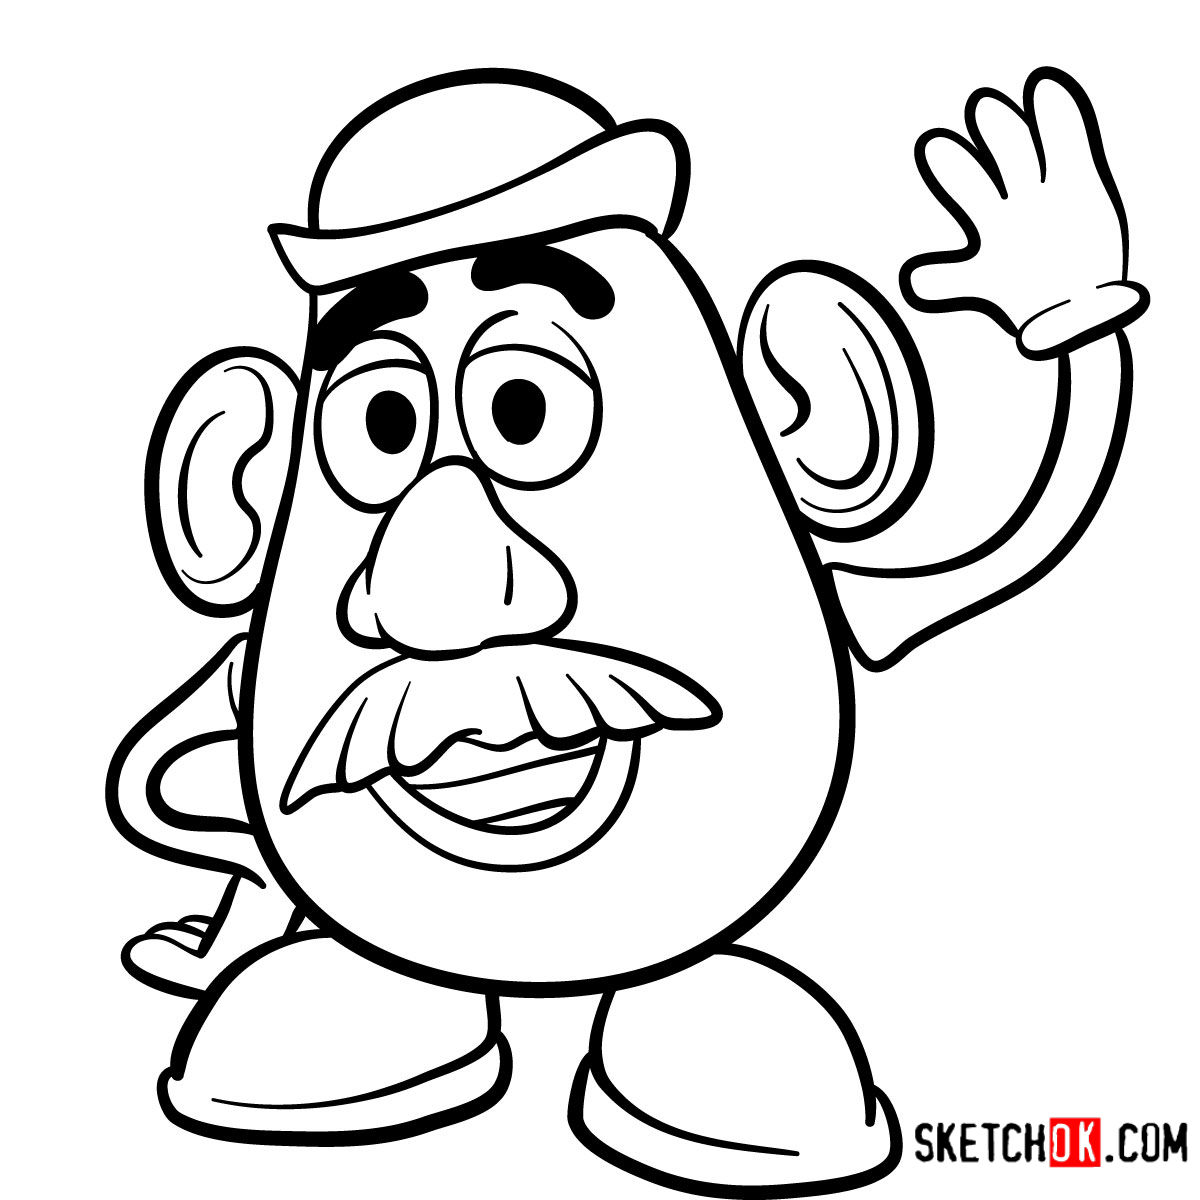 How to draw Mr. Potato Head | Toy Story